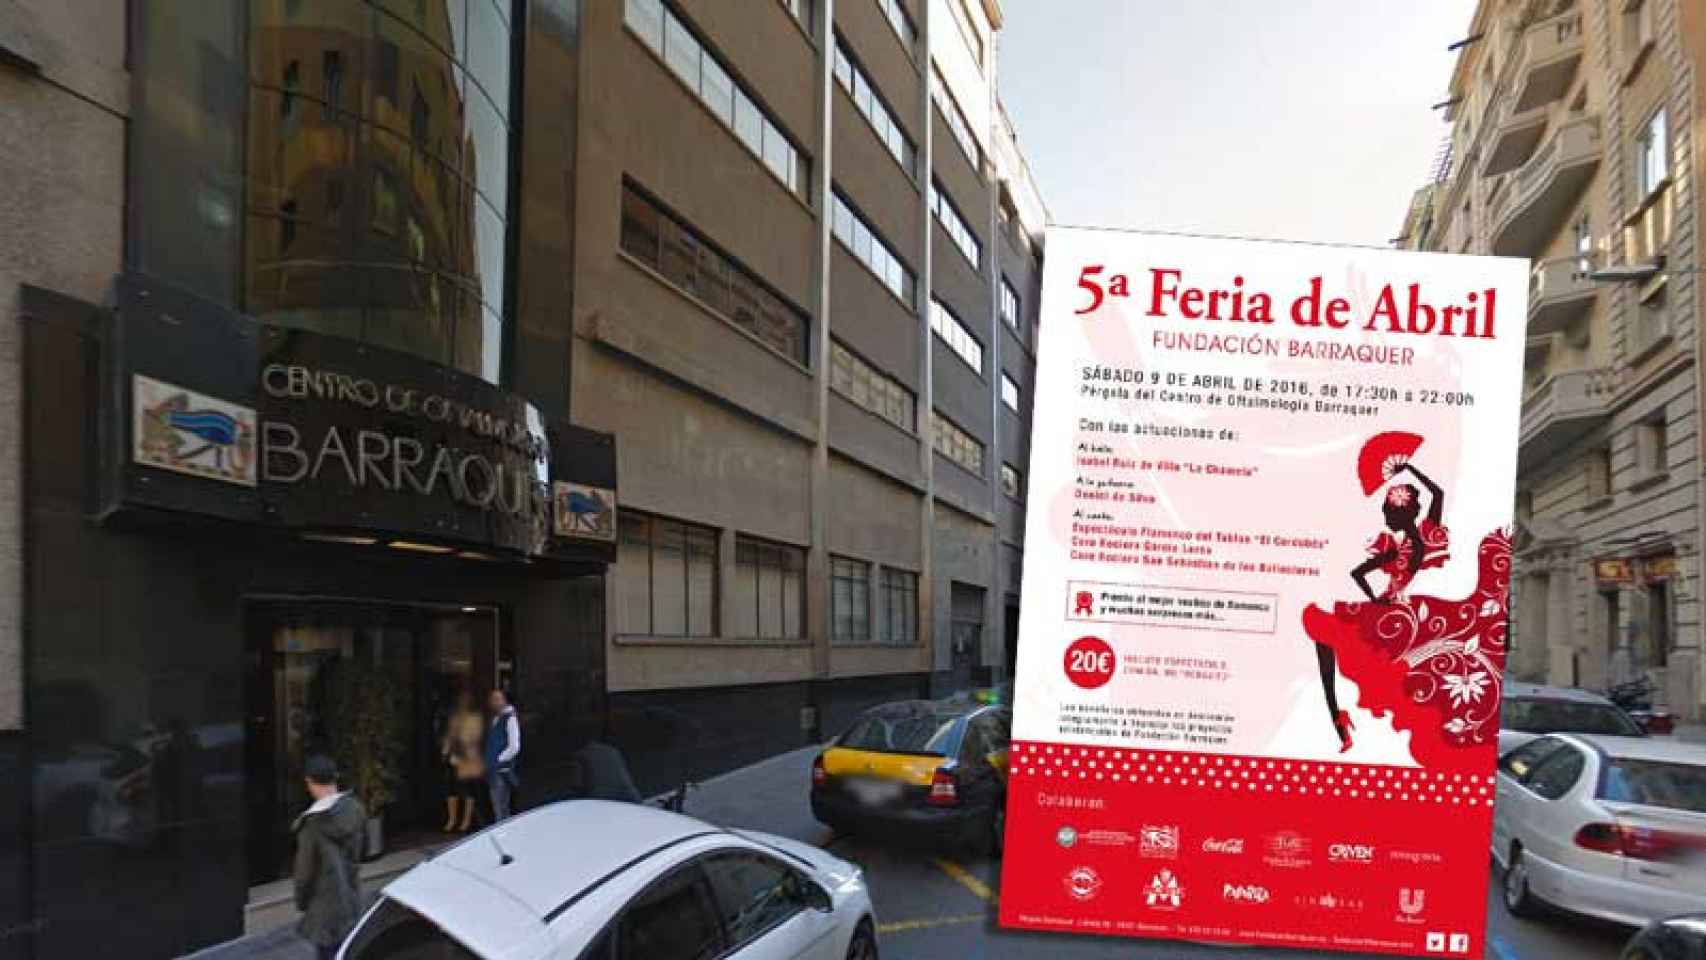 Instalaciones del prestigioso centro oftalmológico Barraquer, que acogió una nueva edición de la Feria de Abril en Barcelona.